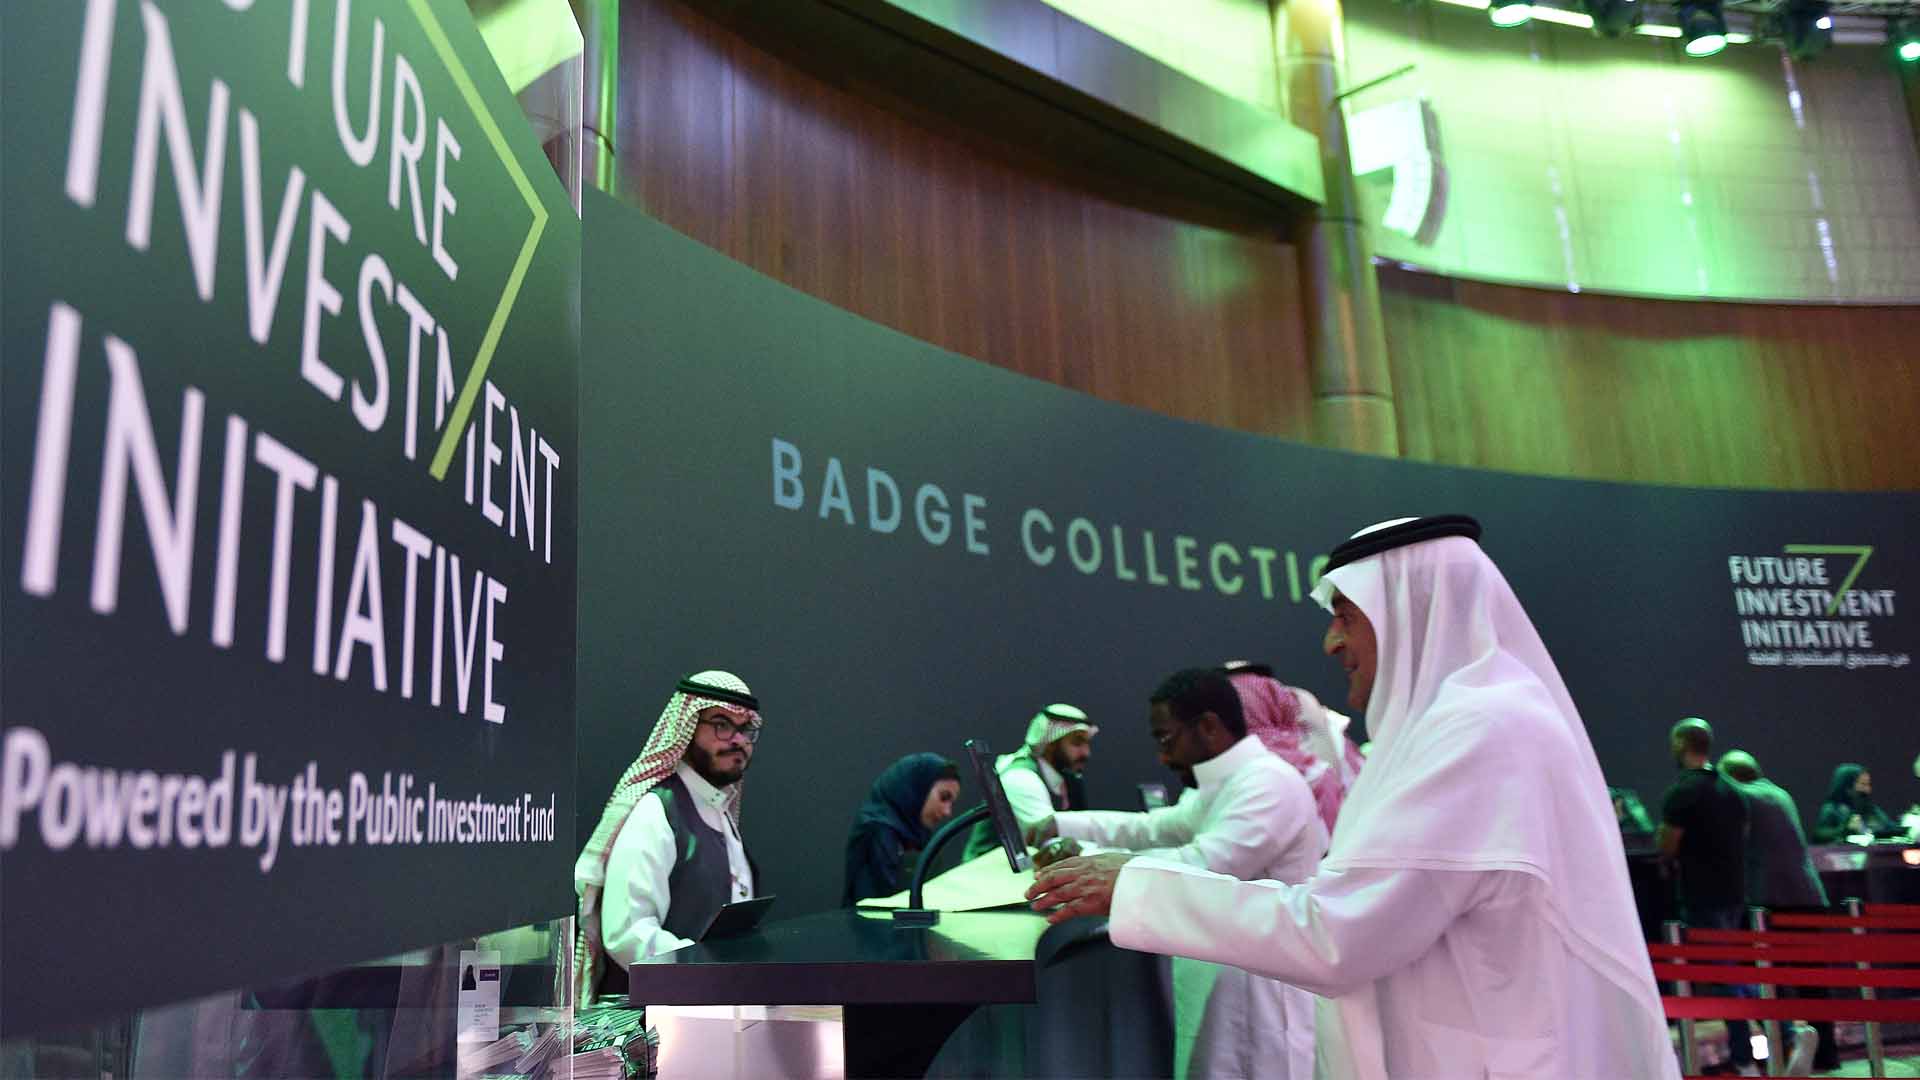 Comienza en Riad el foro 'Davos in the Desert' marcado por el caso Khashoggi